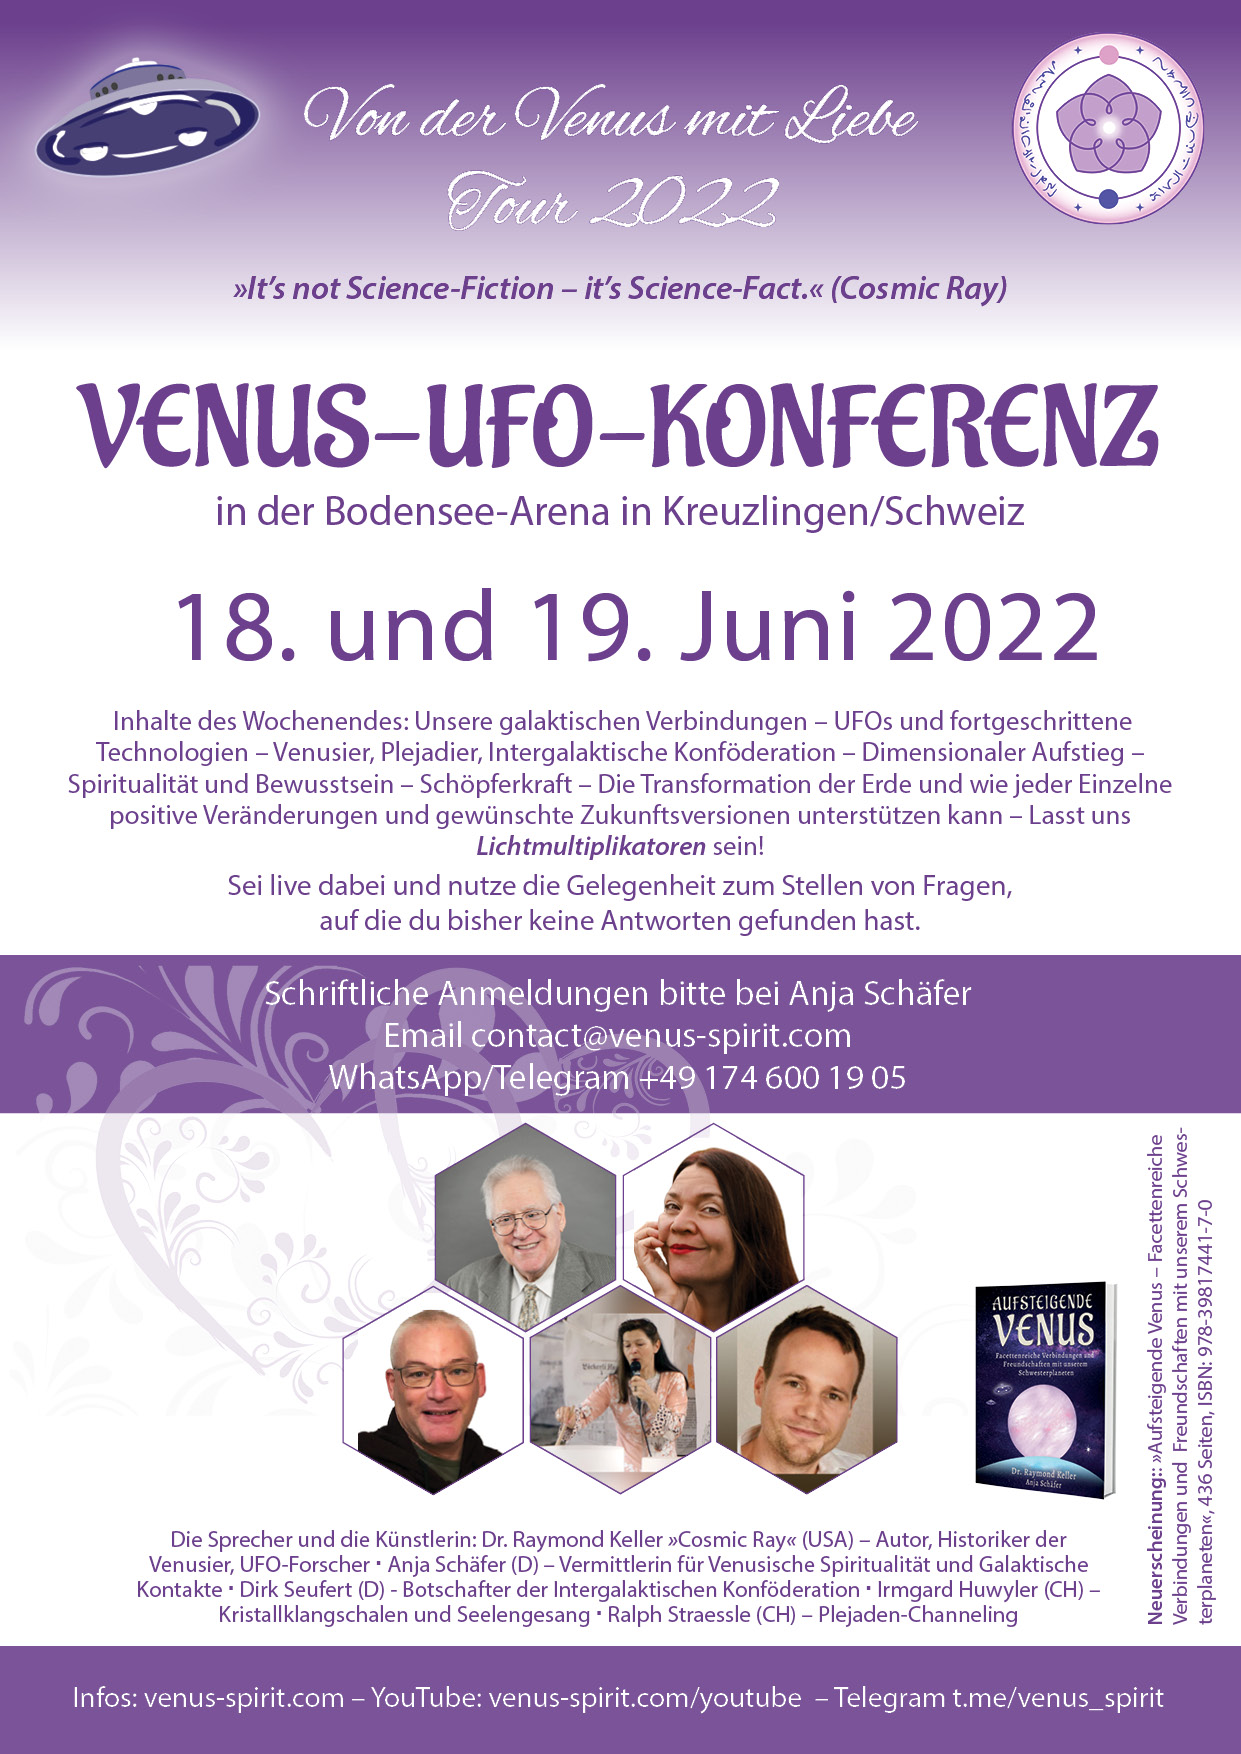 Venus-Ufo-Konferenz-Kreuzlingen-Flyer